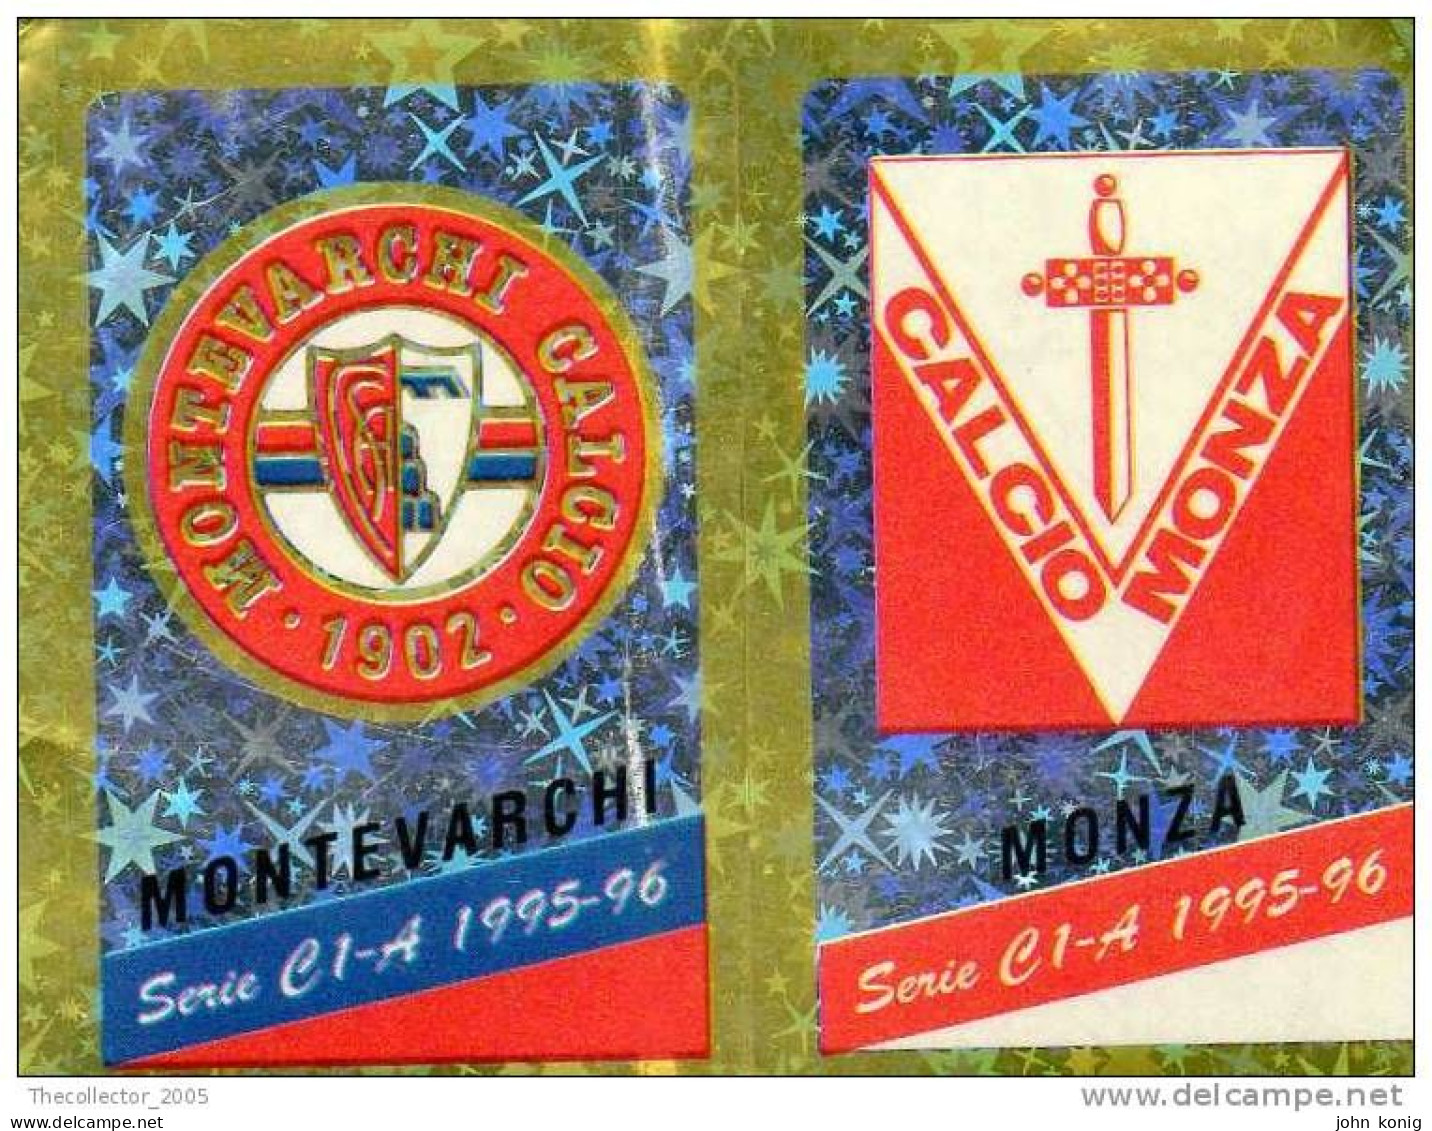 CALCIATORI - CALCIO Figurine Panini-calciatori 1995-96-n.539ab-scudetto Montevarchi-Monza (prismatico) - NUOVA-MAI INCOL - Italian Edition